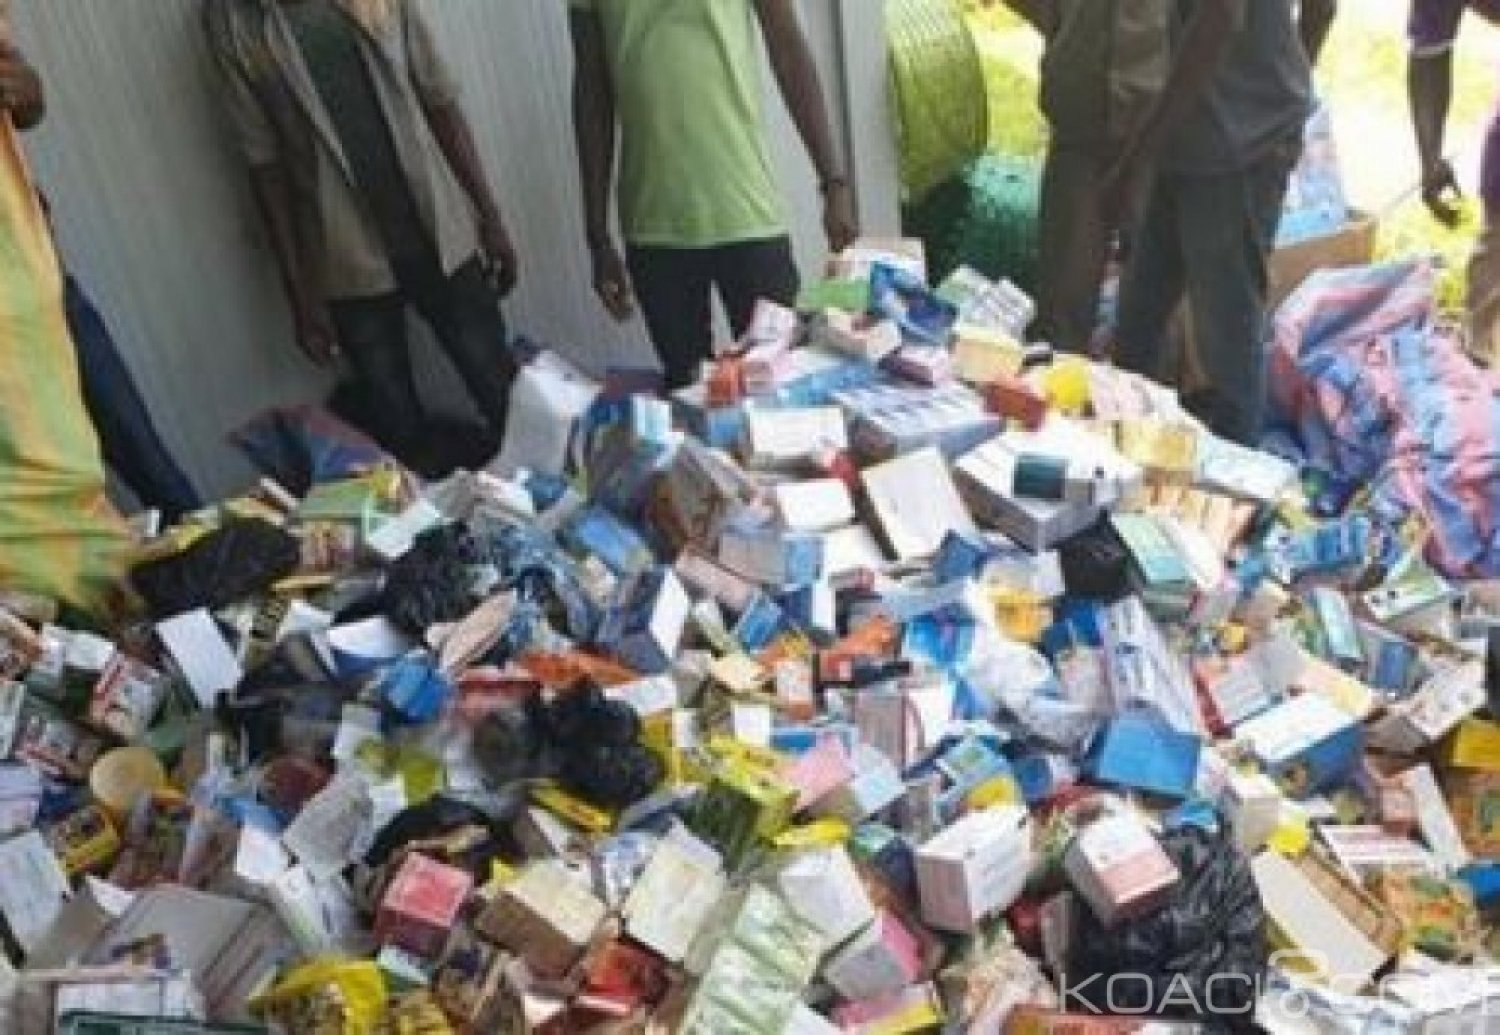 Côte d'Ivoire: Vente de médicaments dans les rues, plus de 2,3 tonnes saisies